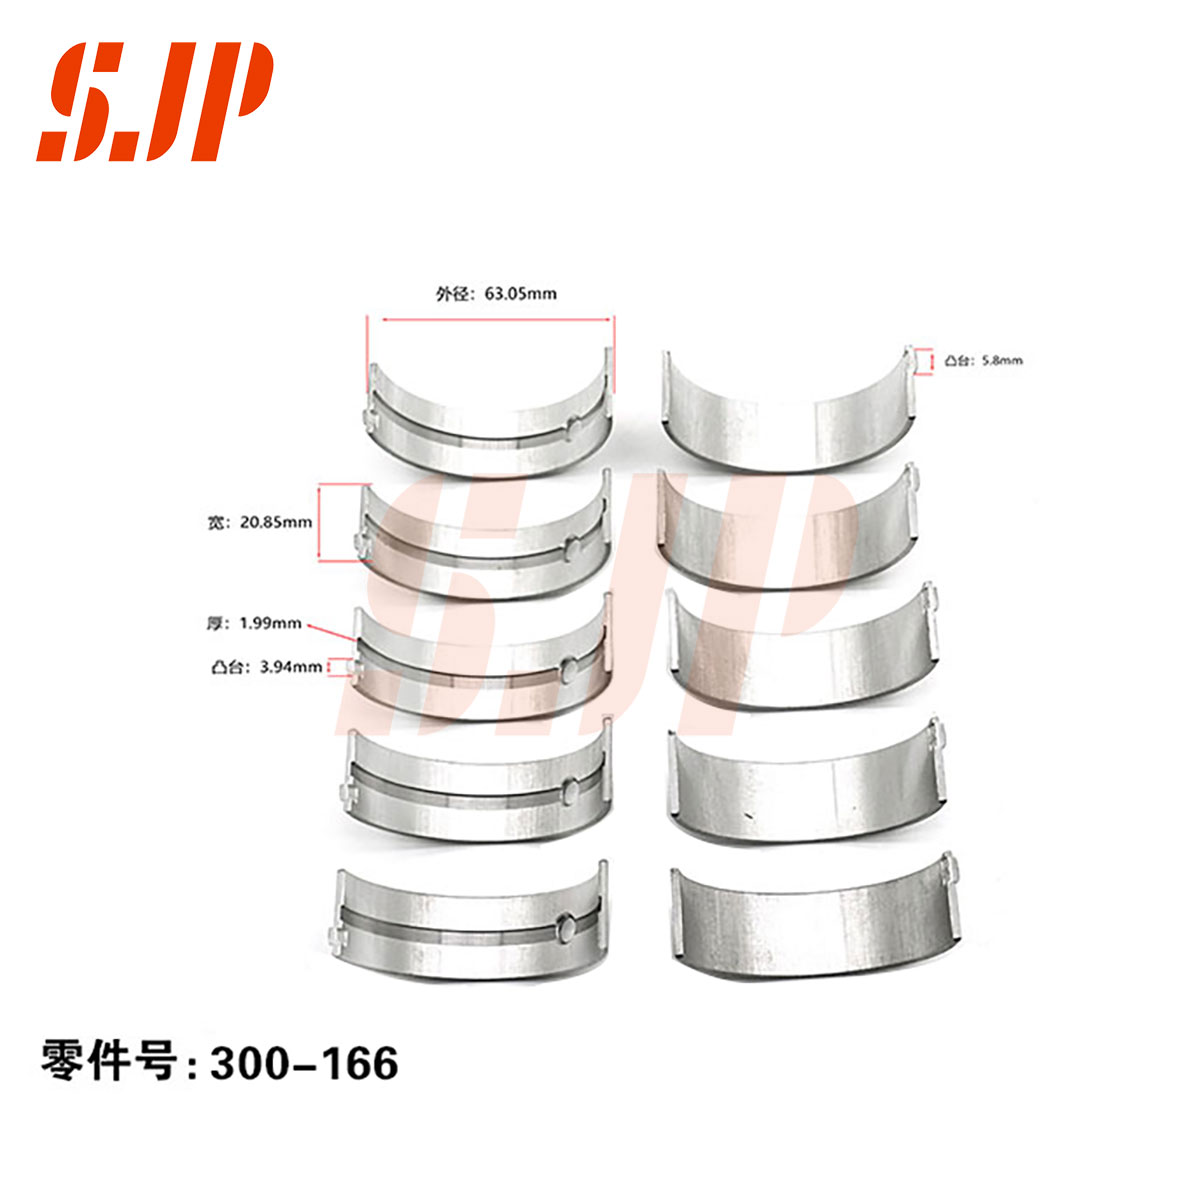 SJ-300-166 Main Bearing Set For TOYOTA Jinbei Hiace 2.2 4Y